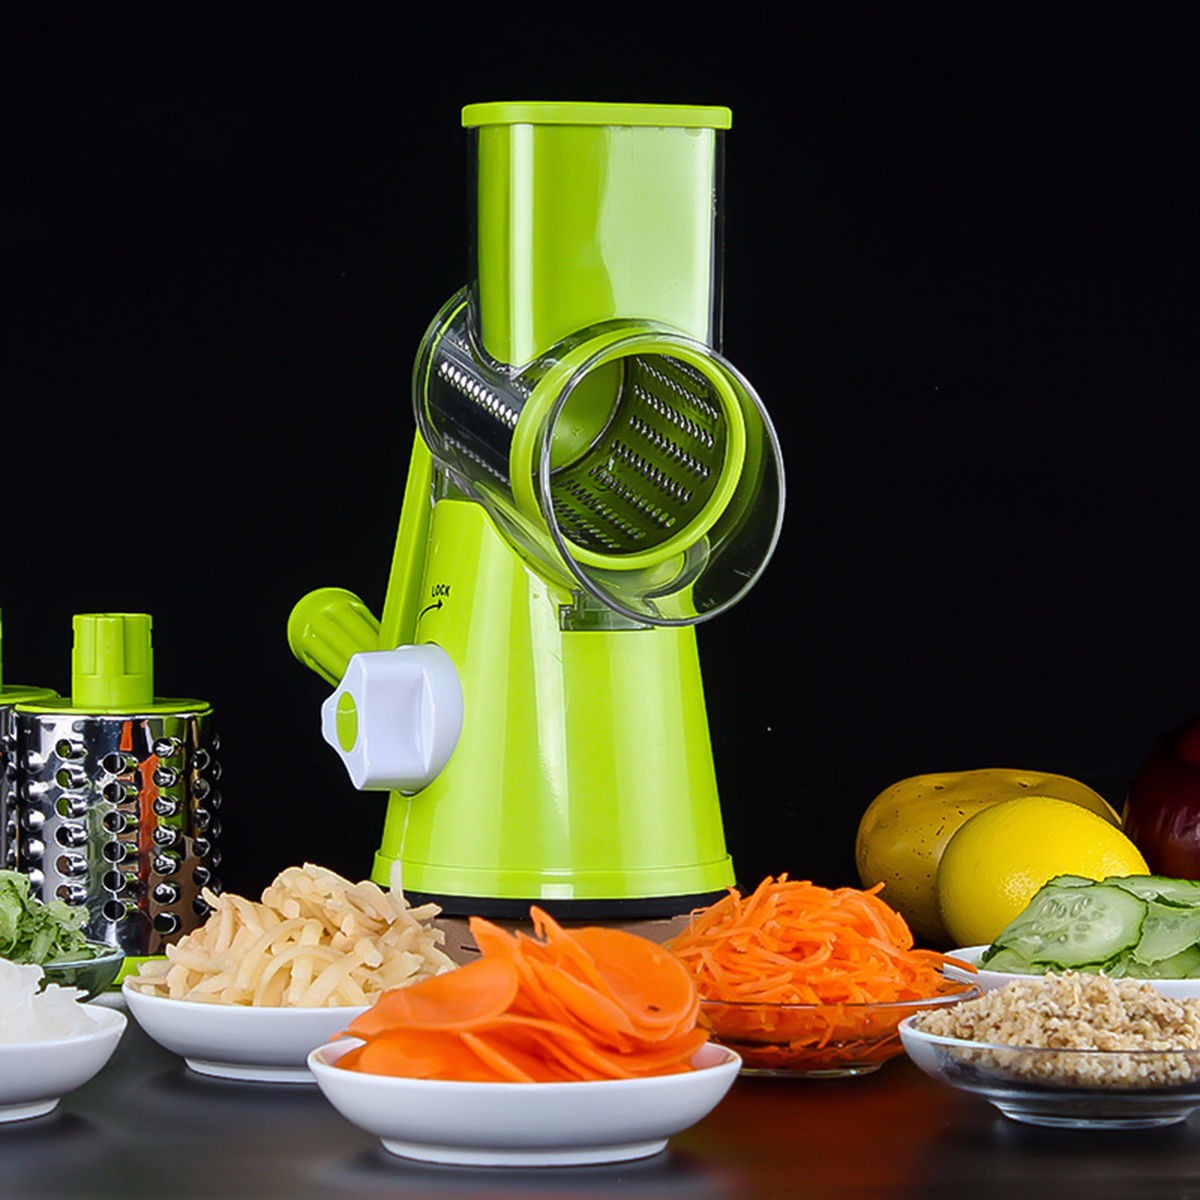 Amazing Round Mandoline Slicer Vegetable Cutter - My Kitchen Gadgets